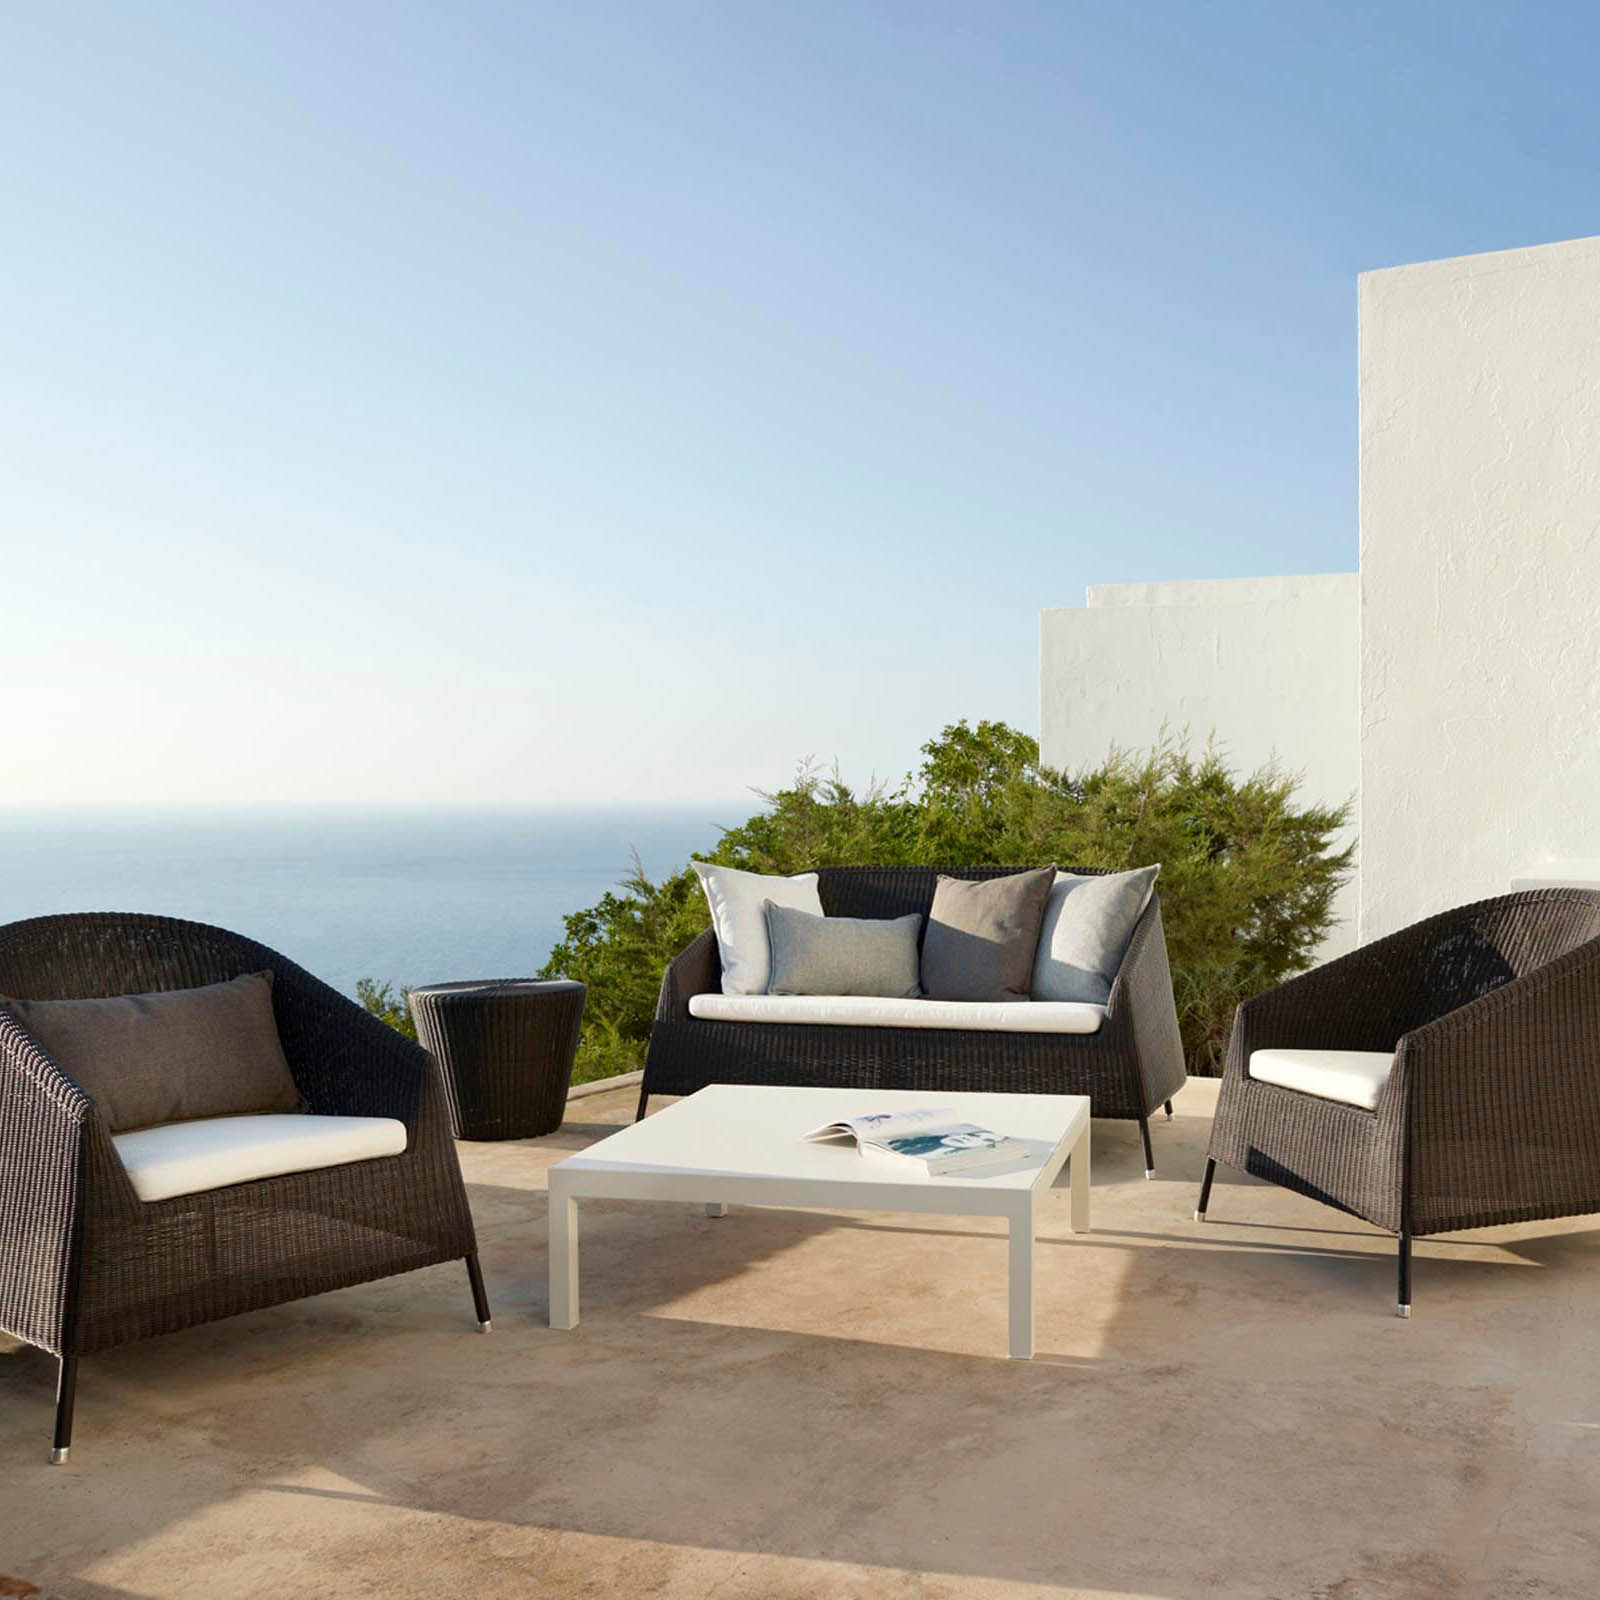 Kingston 2-Sitzer Sofa aus Cane-line Weave in White Grey mit Kissen aus Cane-line Natté in Black